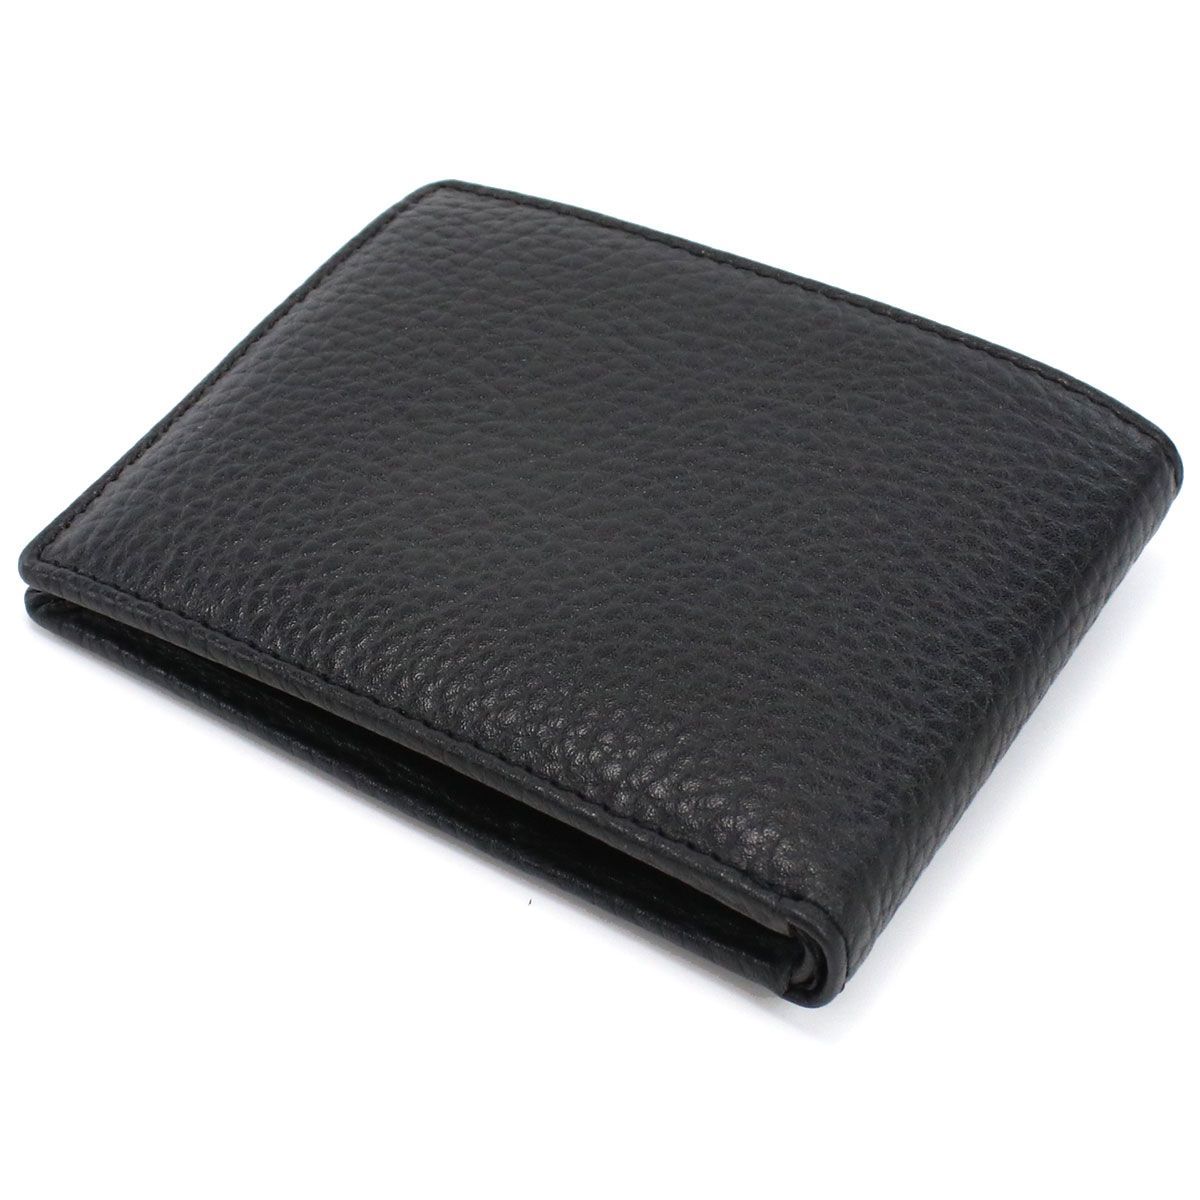 【新品・未使用】ディーゼル DIESEL 2つ折り財布 ブランド財布 X09012 PR013 T8013 ブラック メンズ レディース